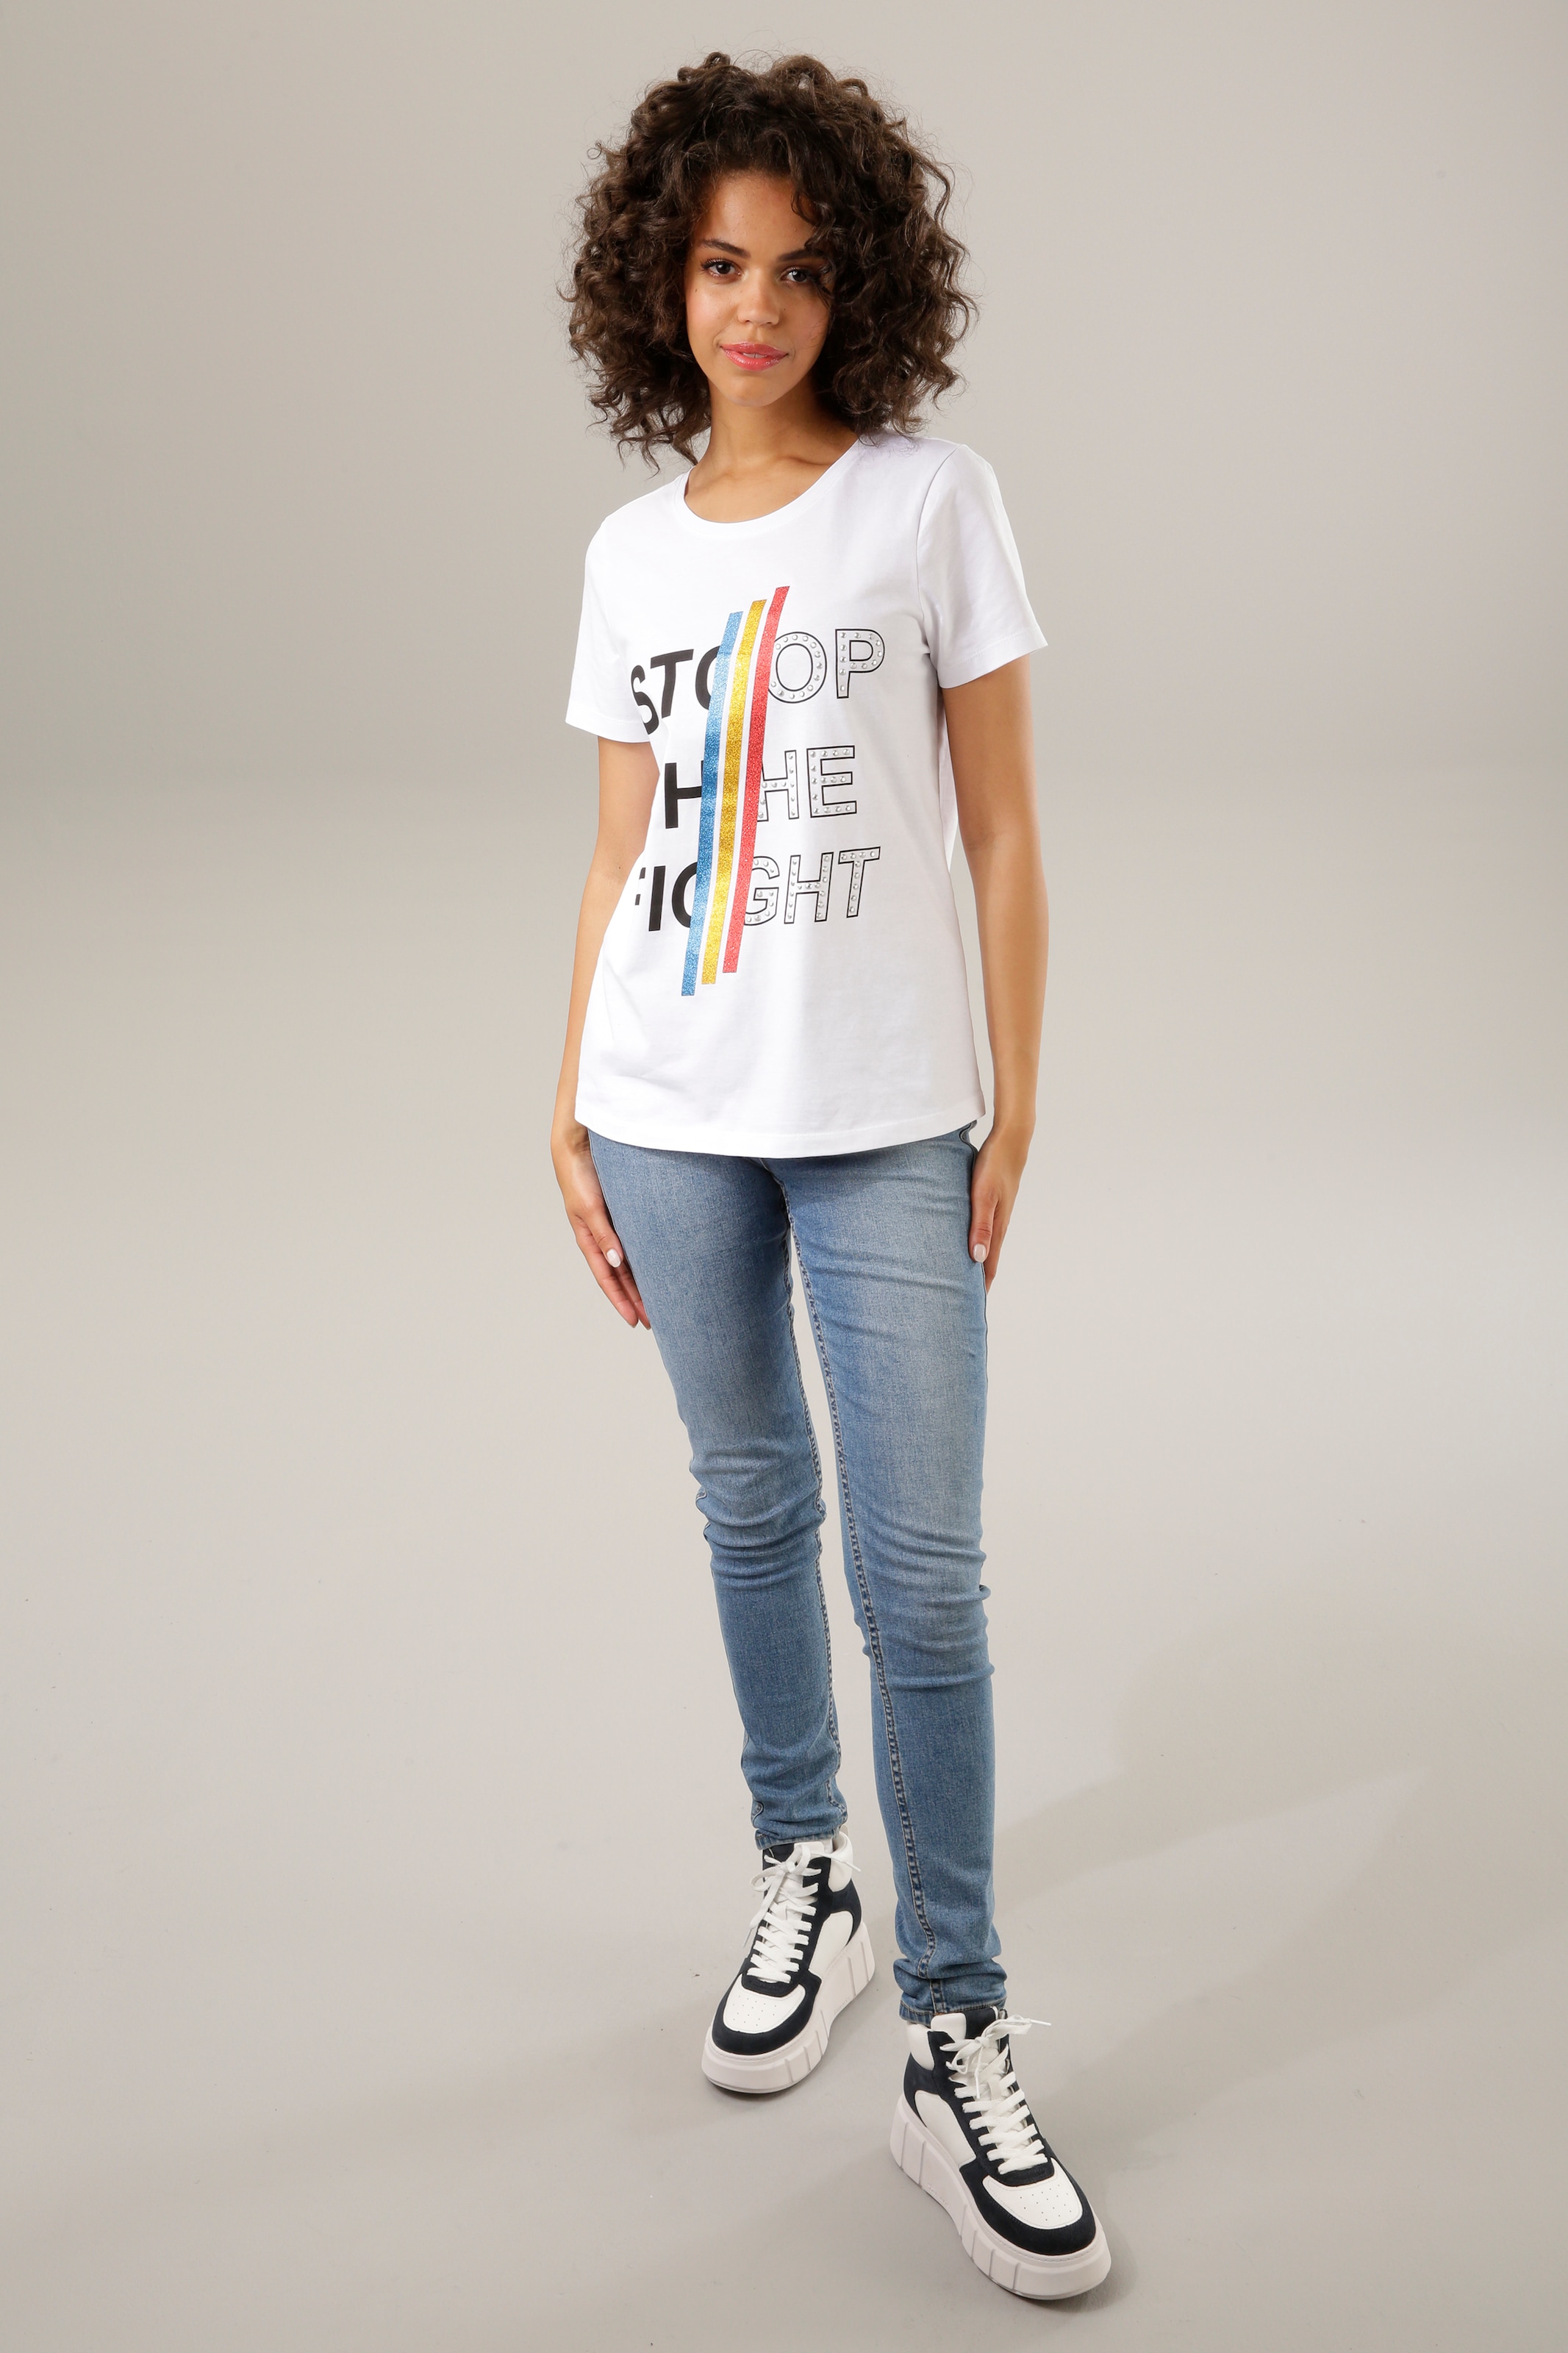 CASUAL und Print-Shirt, bunten shoppen mit Glitzerstreifen, Aniston Nieten Schriftzug